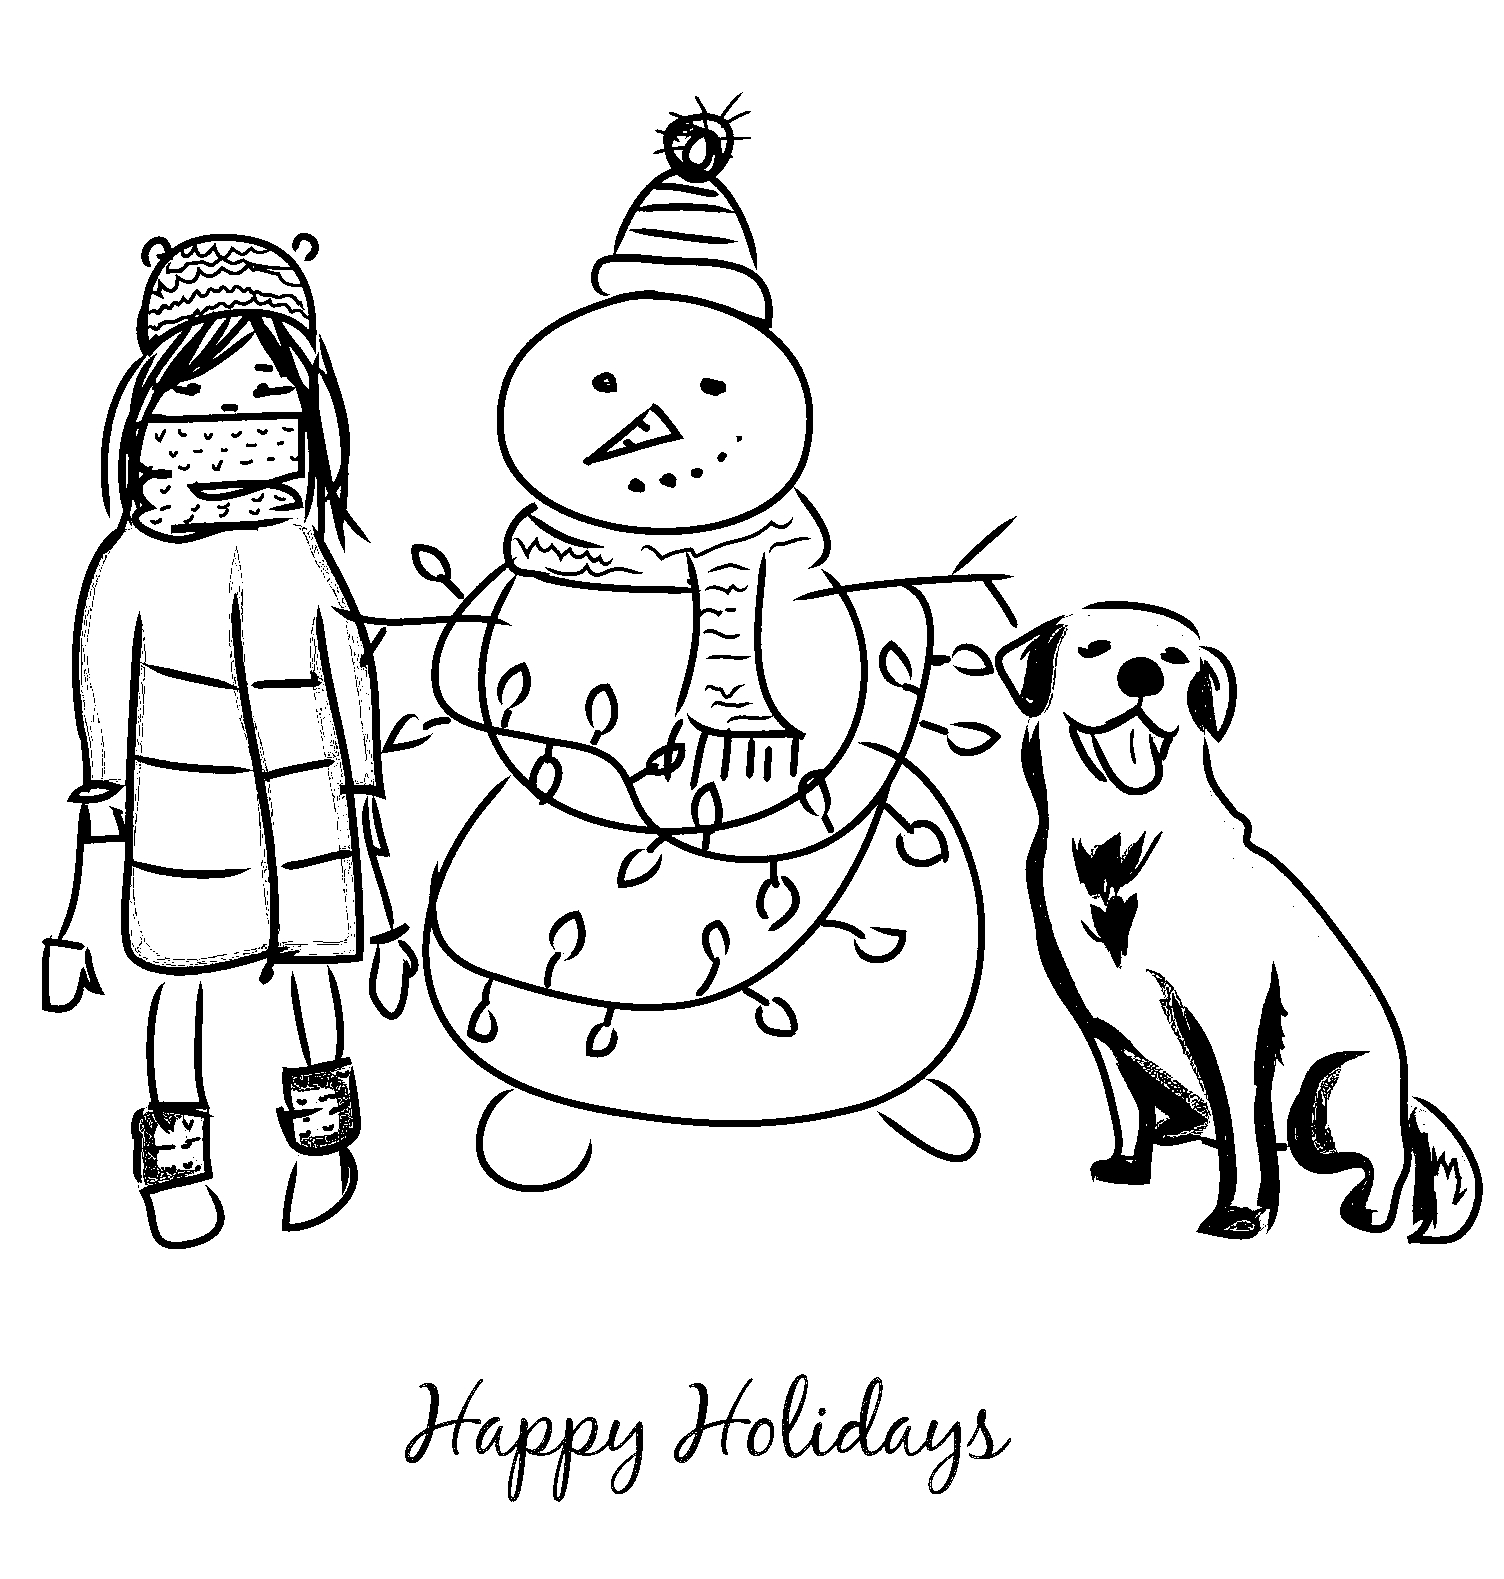 Disegno da colorare di cane, bambina e pupazzo neve